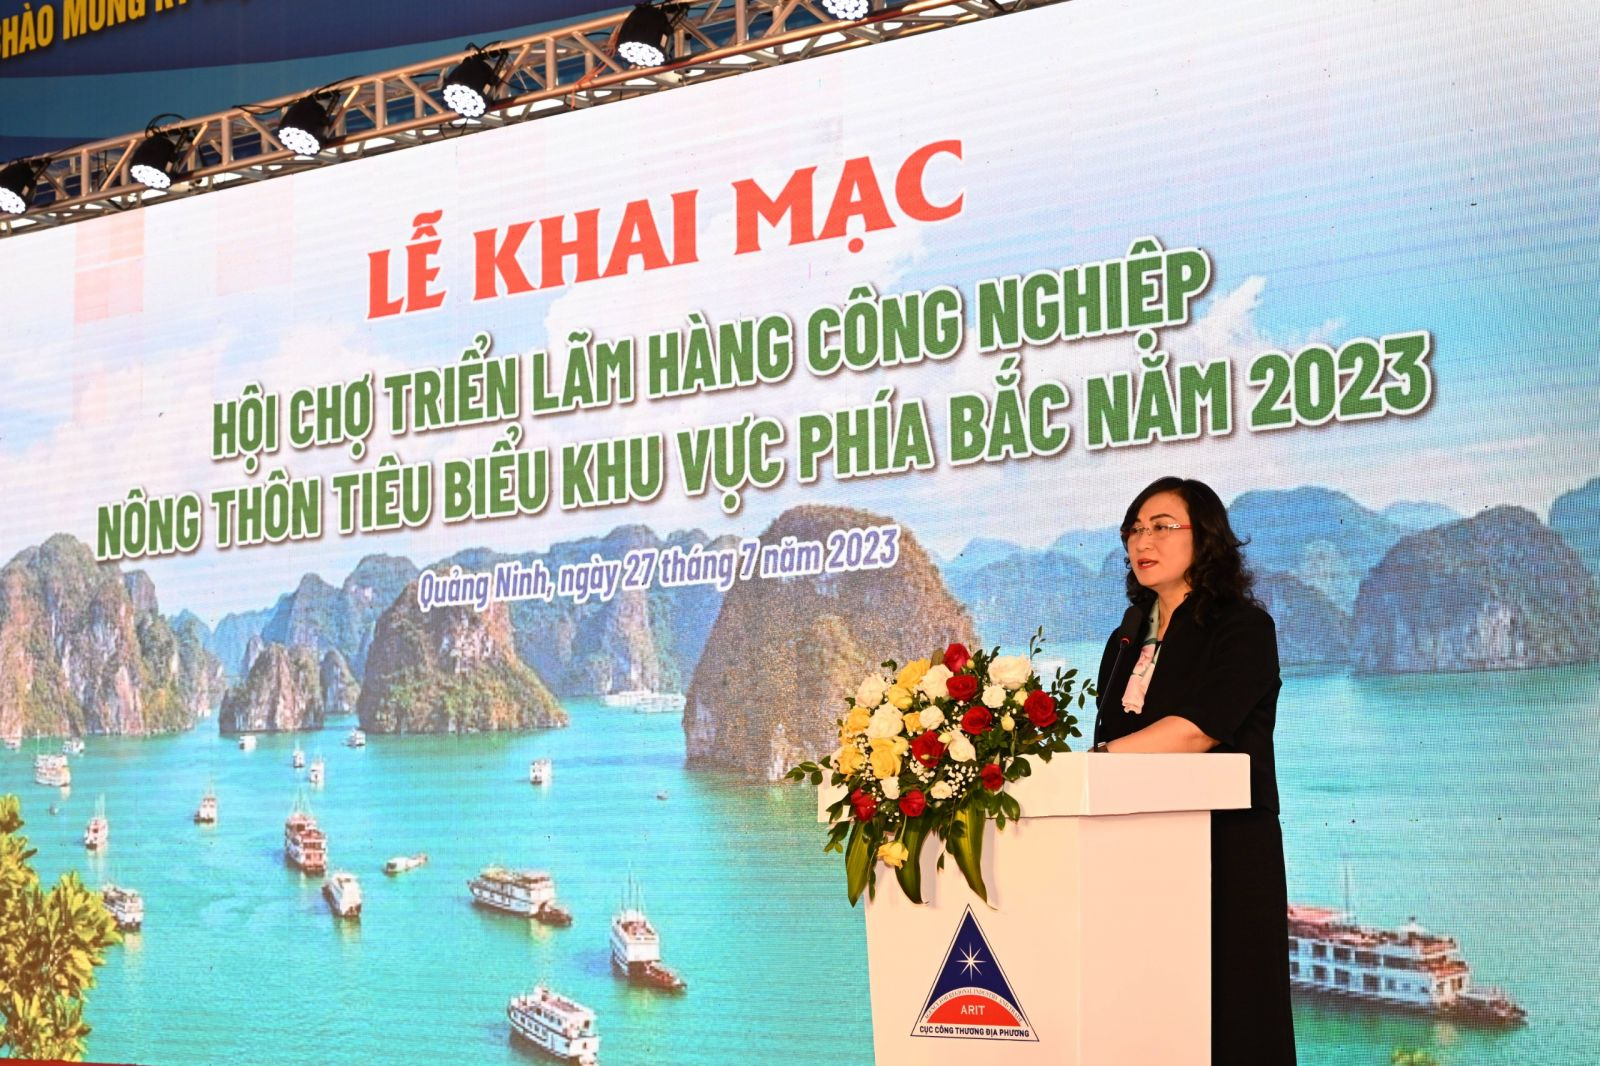 Bình Dương tham gia Hội chợ triển lãm hàng công nghiệp nông thôn tiêu biểu khu vực phía Bắc tại Quảng Ninh